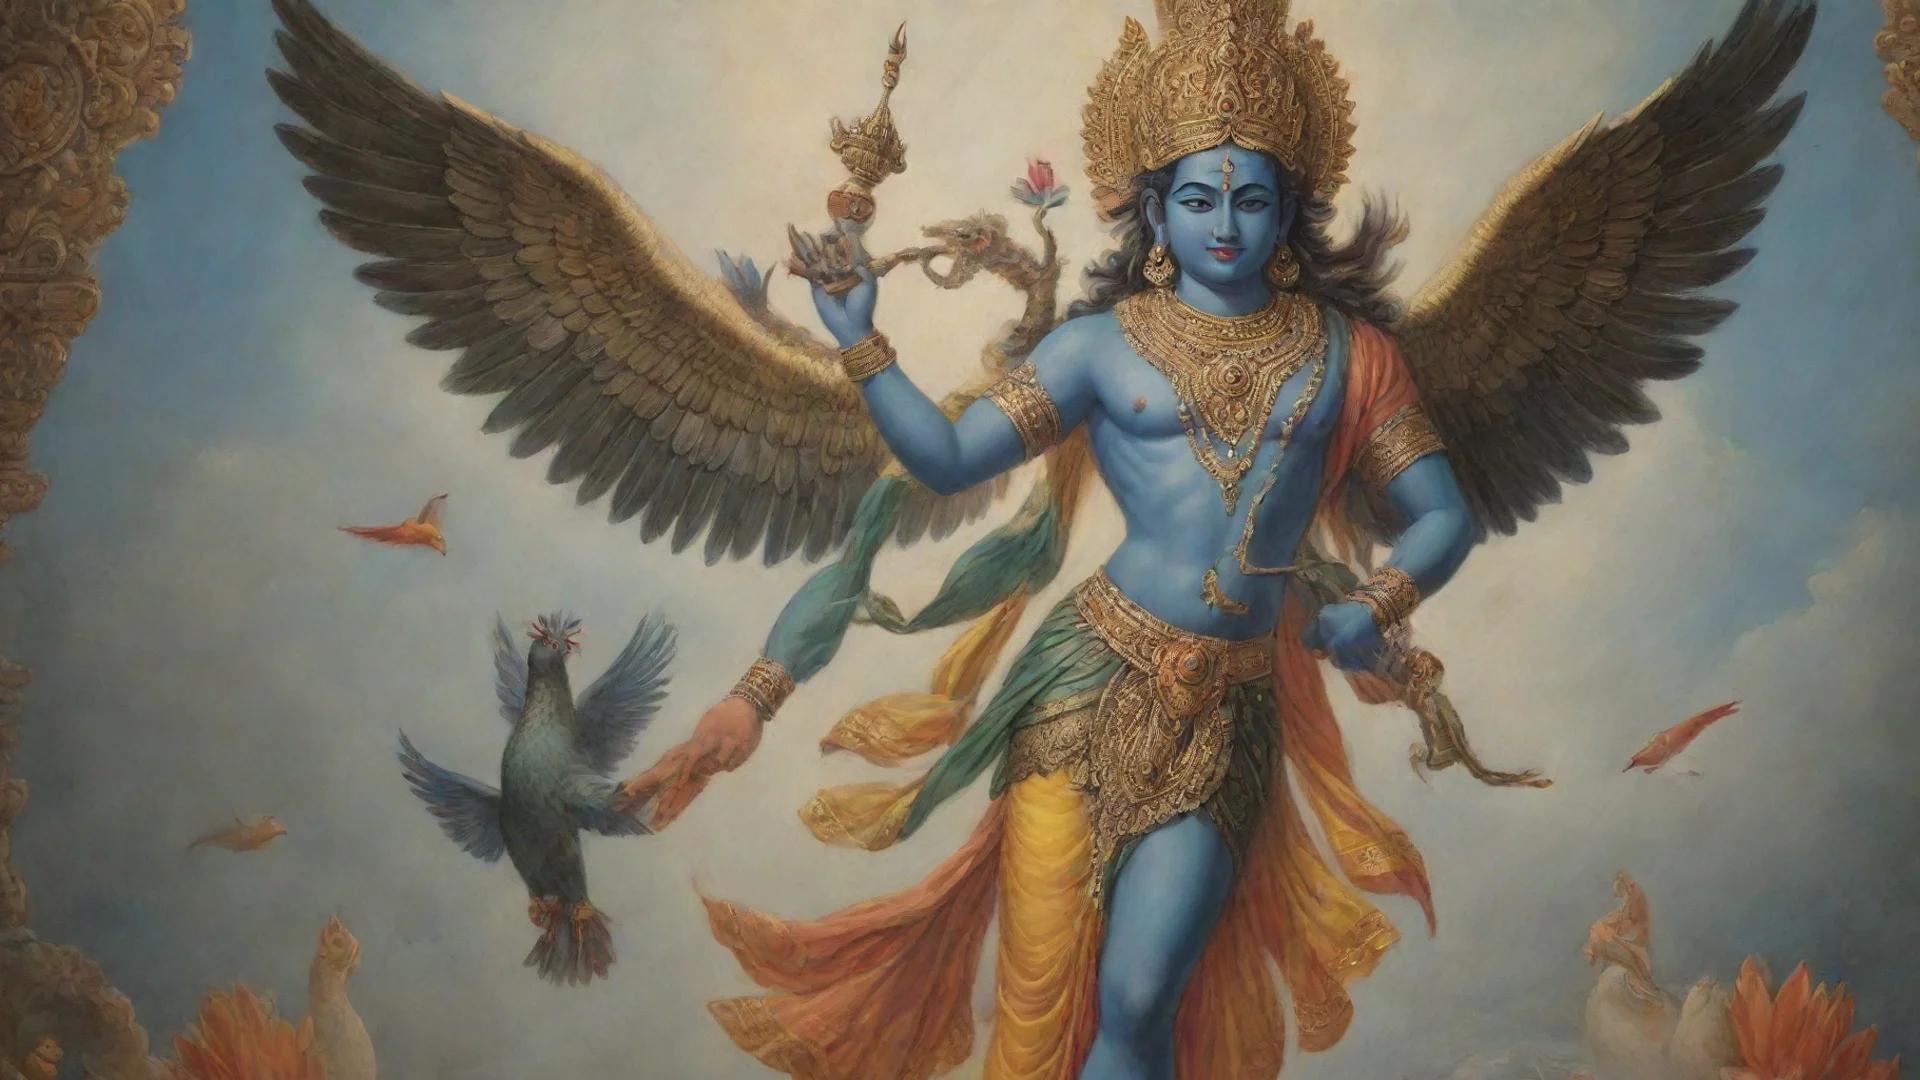 amazing hindu lord vishnu with garuda bird awesome portrait 2 wide